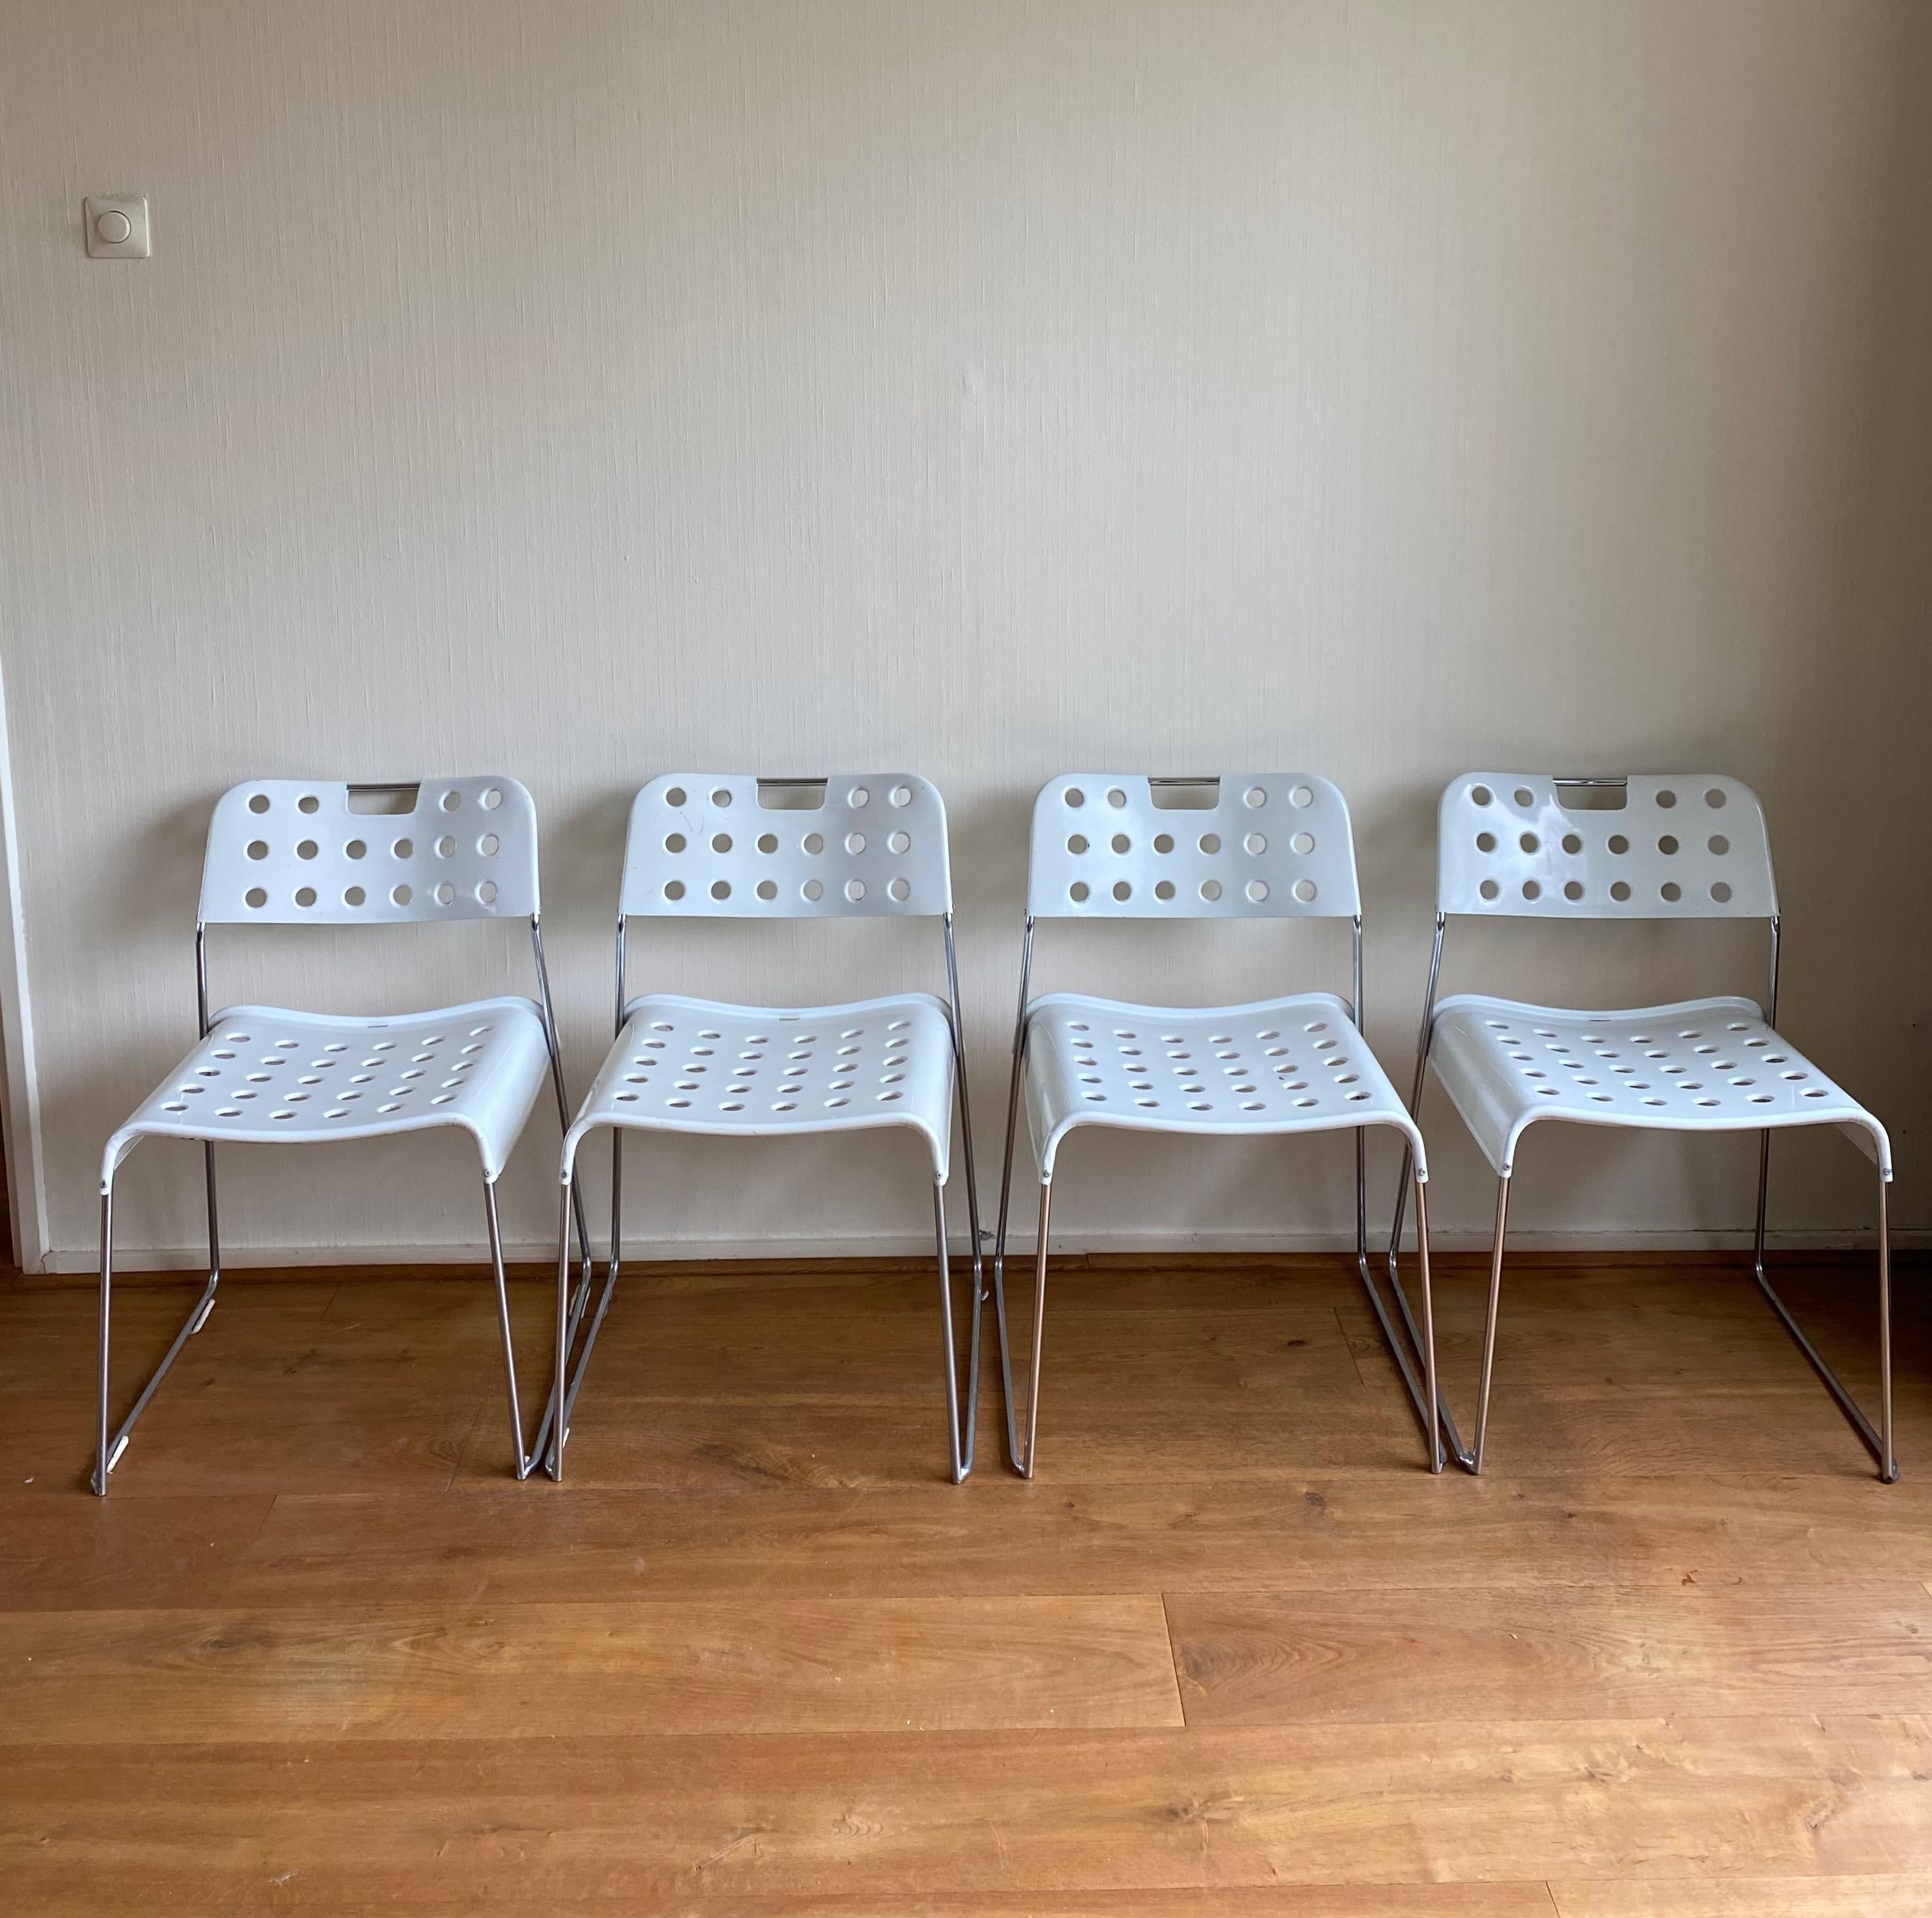 Satz von vier weißen Stühlen, Modell Omkstak, entworfen von Rodney Kinsman für Bieffeplast Italien. Die Stühle haben ein perforiertes Metallgestell mit verchromten Füßen. Sehr schönes und ungewöhnliches italienisches Design. Die Stühle weisen einige